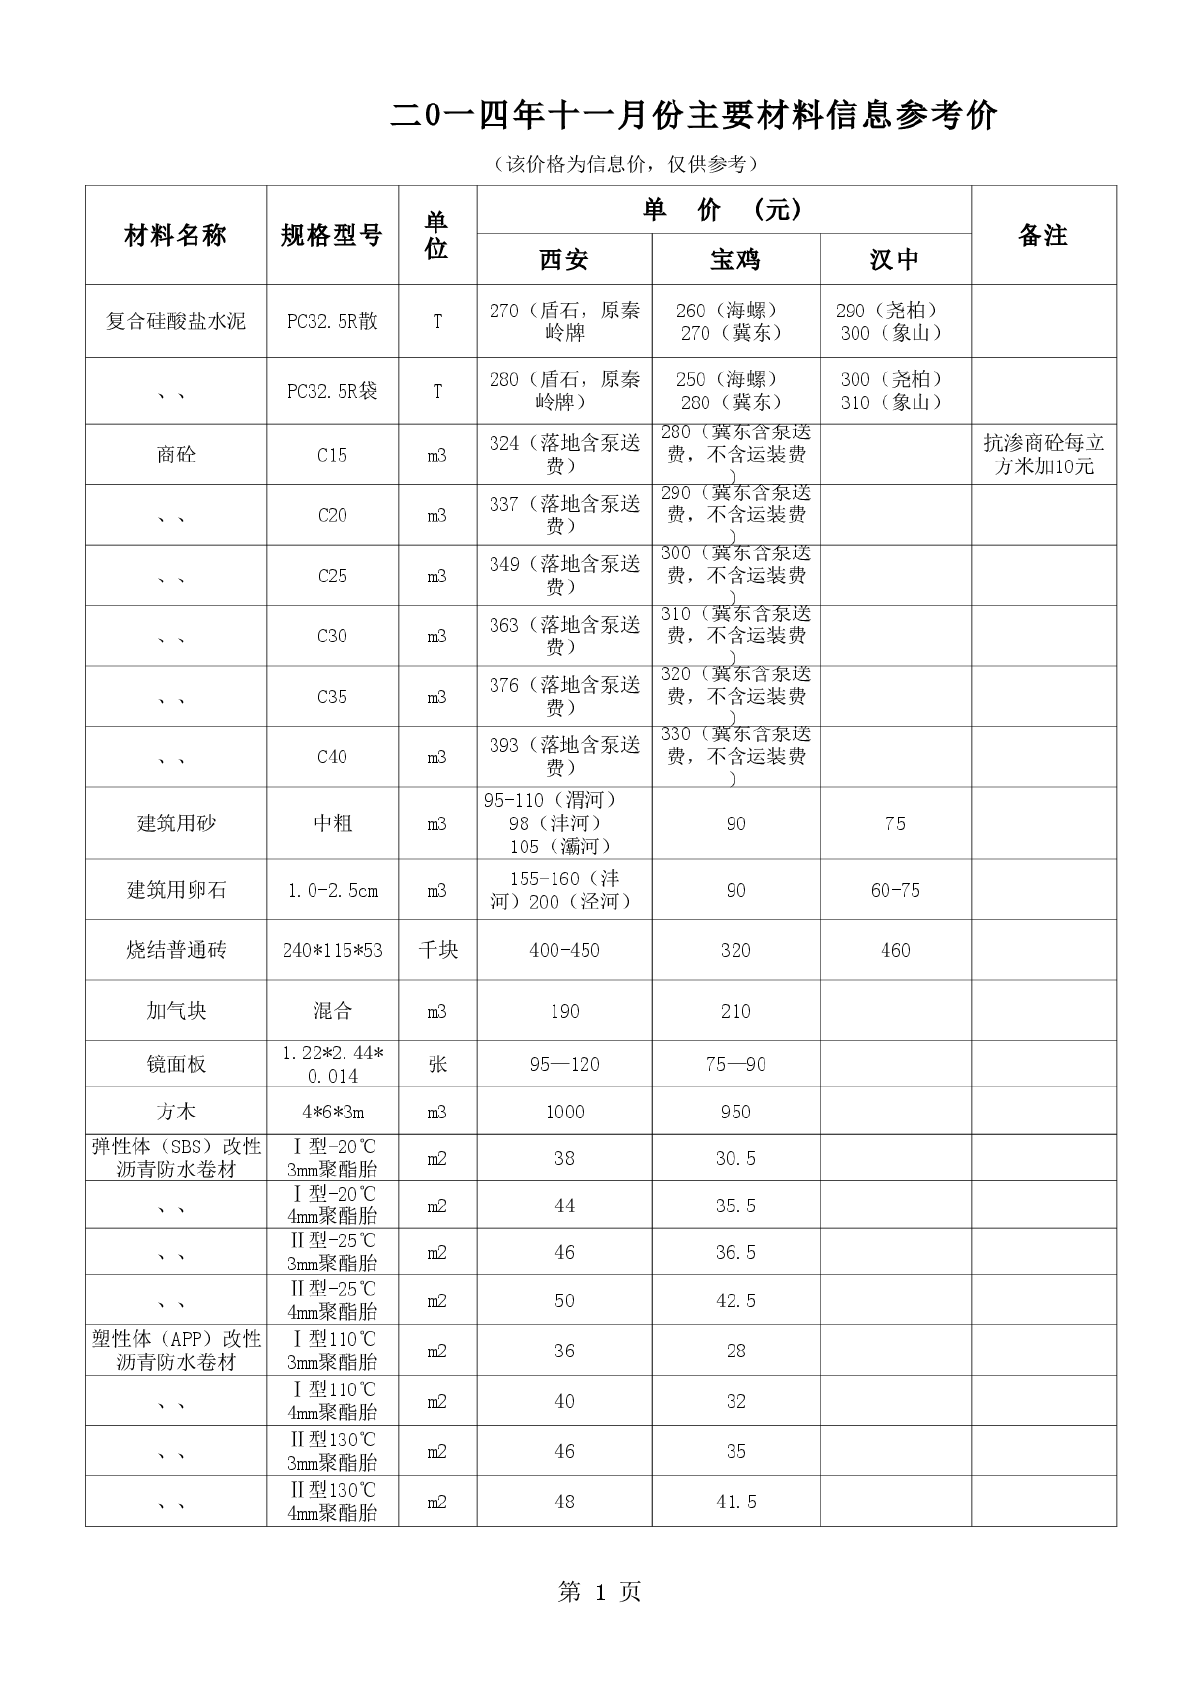 【陕西】建设工程主要材料价格信息(3个市)（2014年11月）-图一